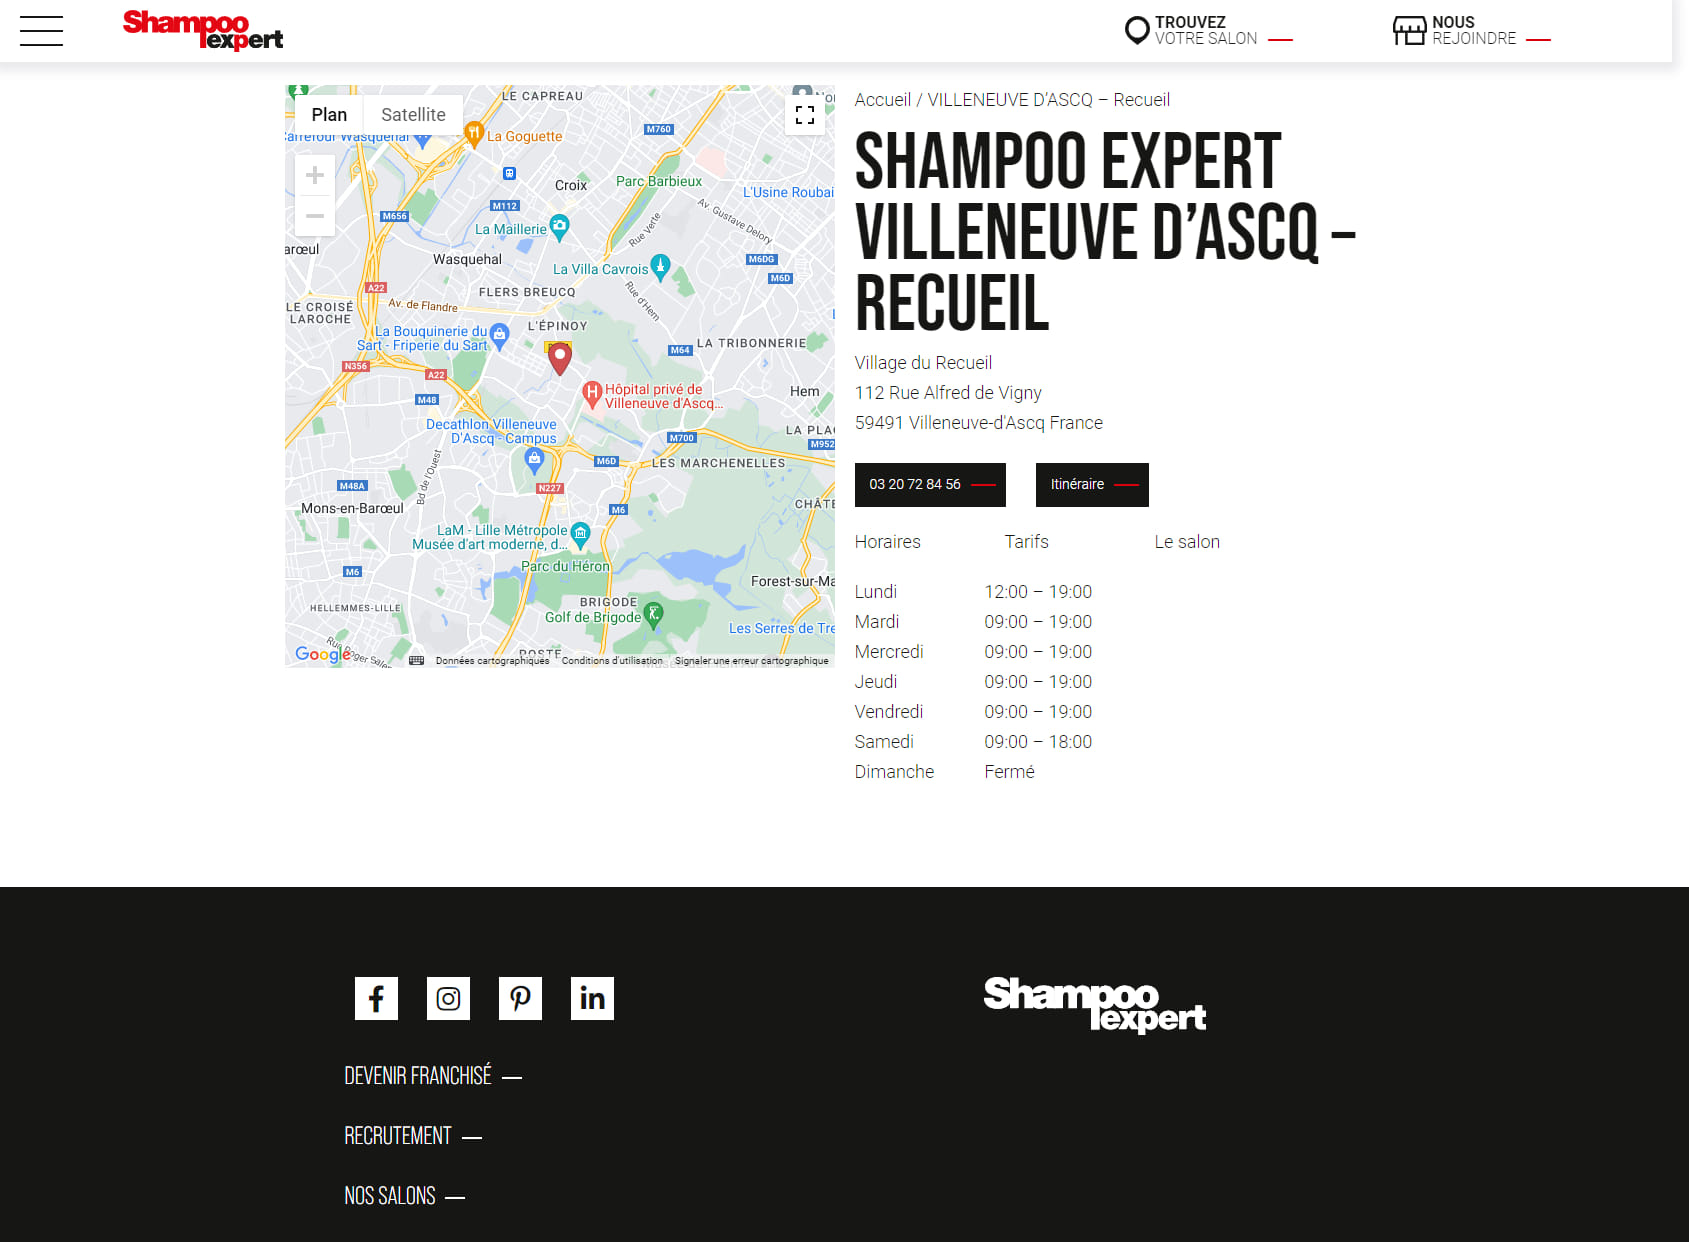 Salon Shampoo Villeneuve d Ascq - Recueil